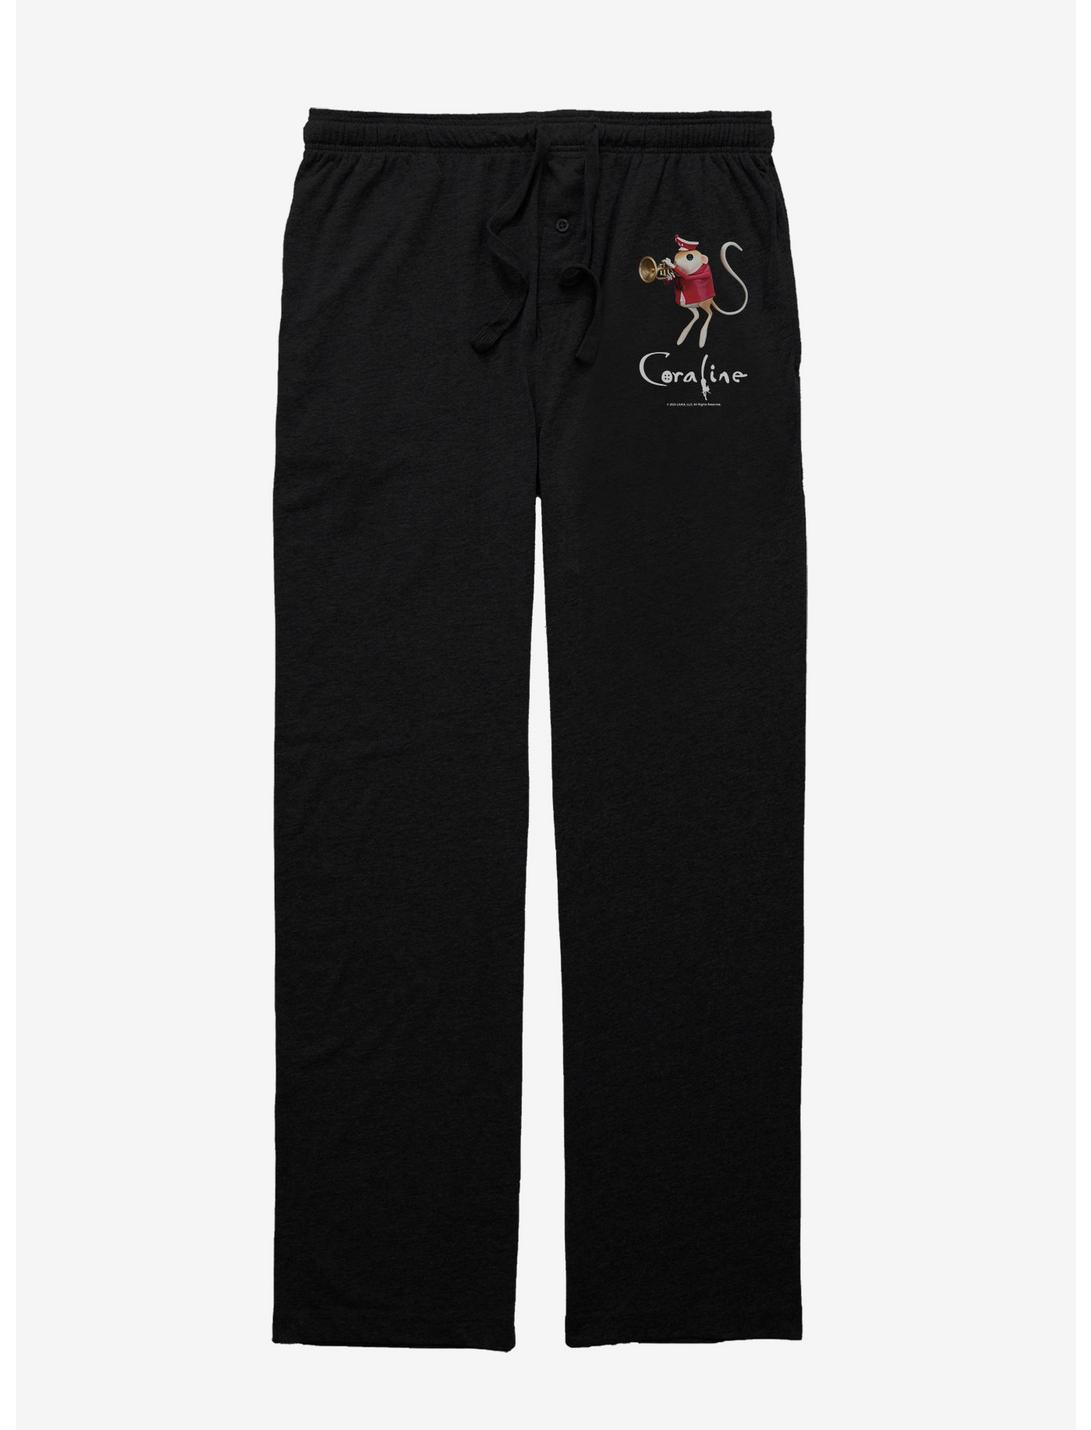 Coraline Circus Mouse Trumpet Pajama Pants, BLACK, hi-res